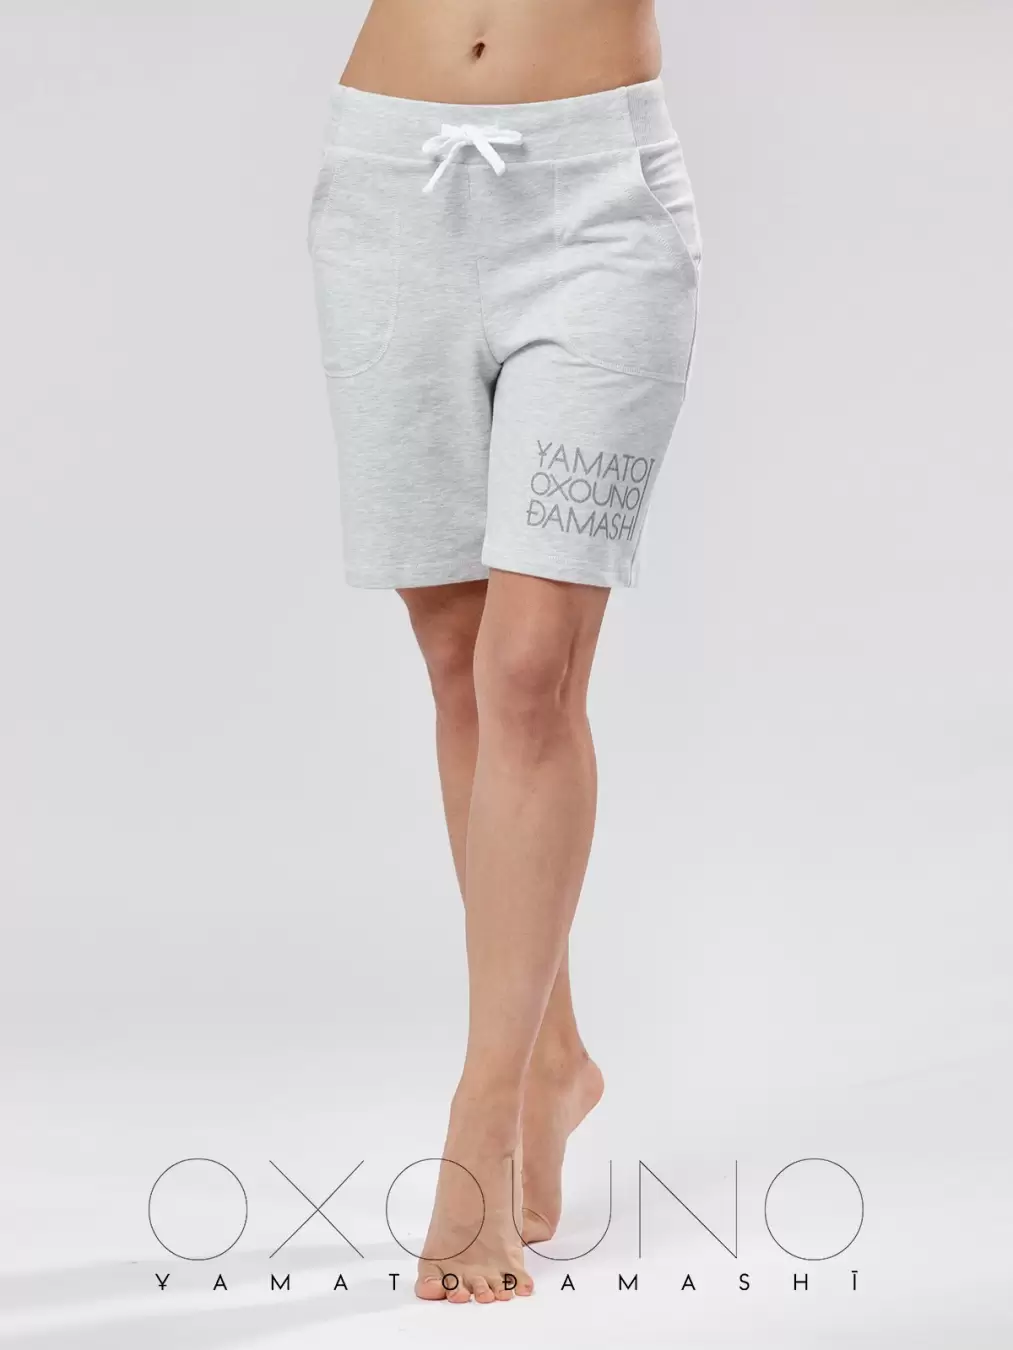 Oxouno OXO 0284-124 FOOTER 02, шорты женские (изображение 1)